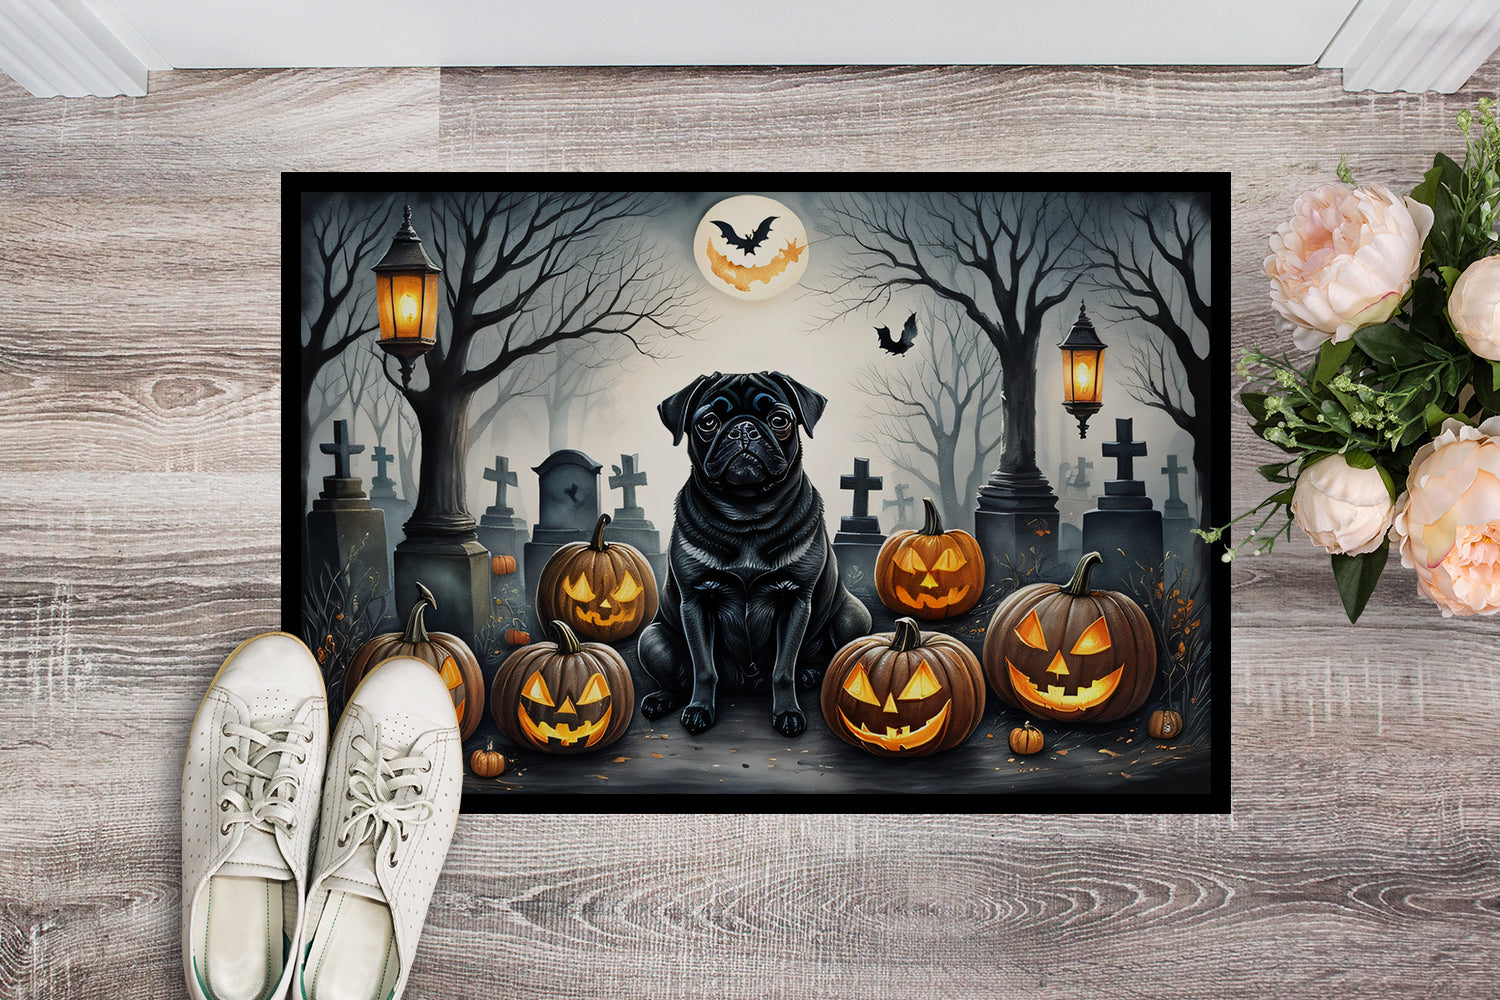 Black Pug Spooky Halloween Doormat 18x27